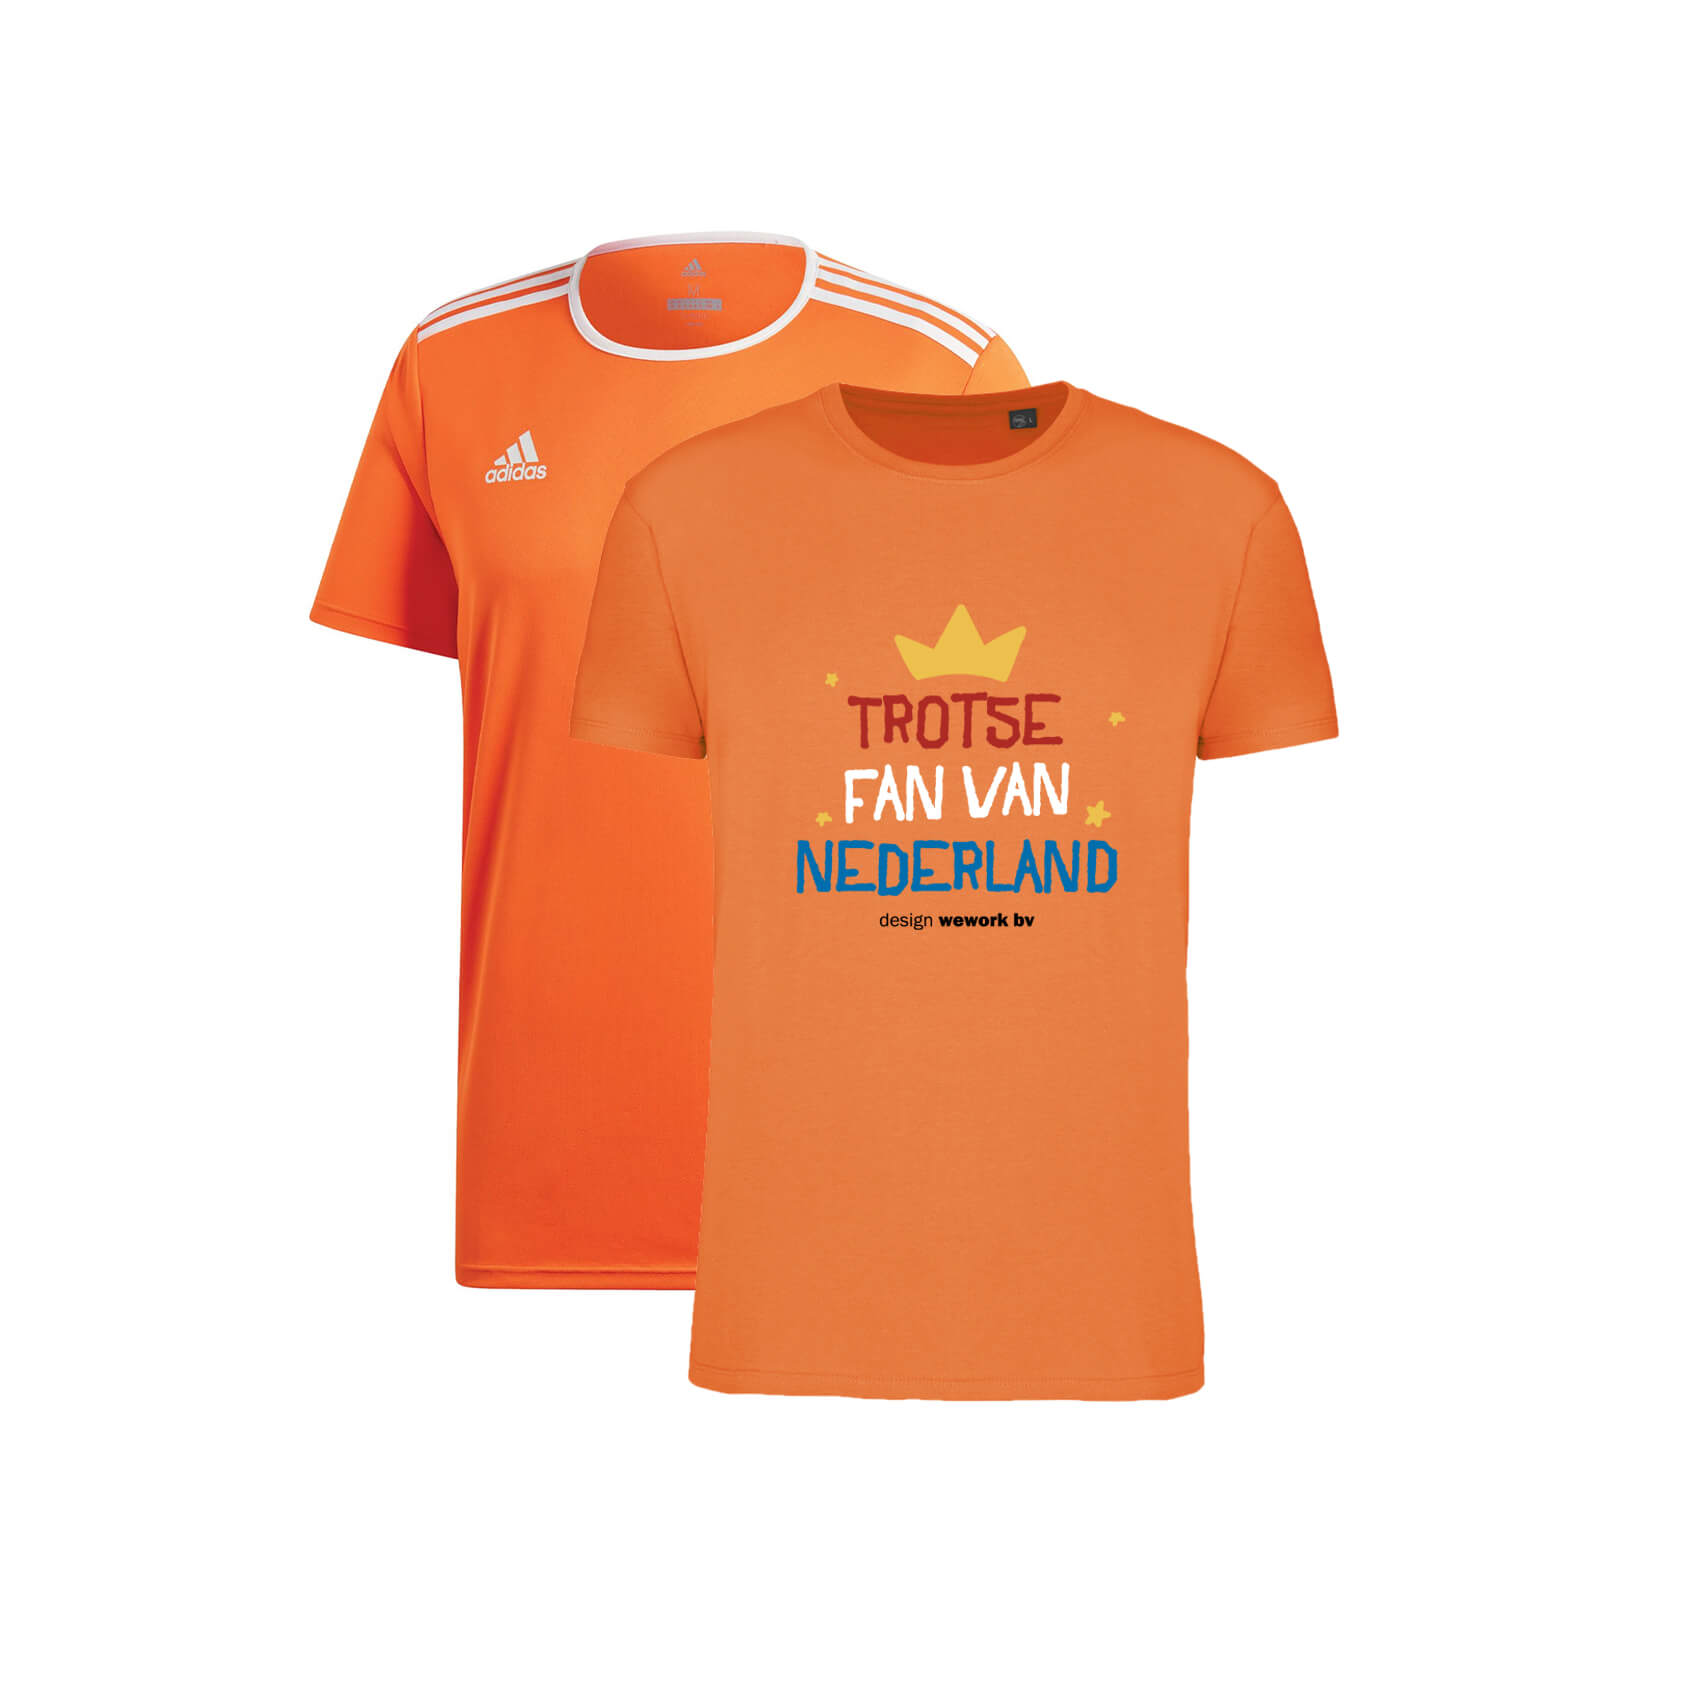 halfrond Tegen verhaal Oranje shirts bedrukken - Kies uit 4 modellen vanaf 5 stuks gedrukt!